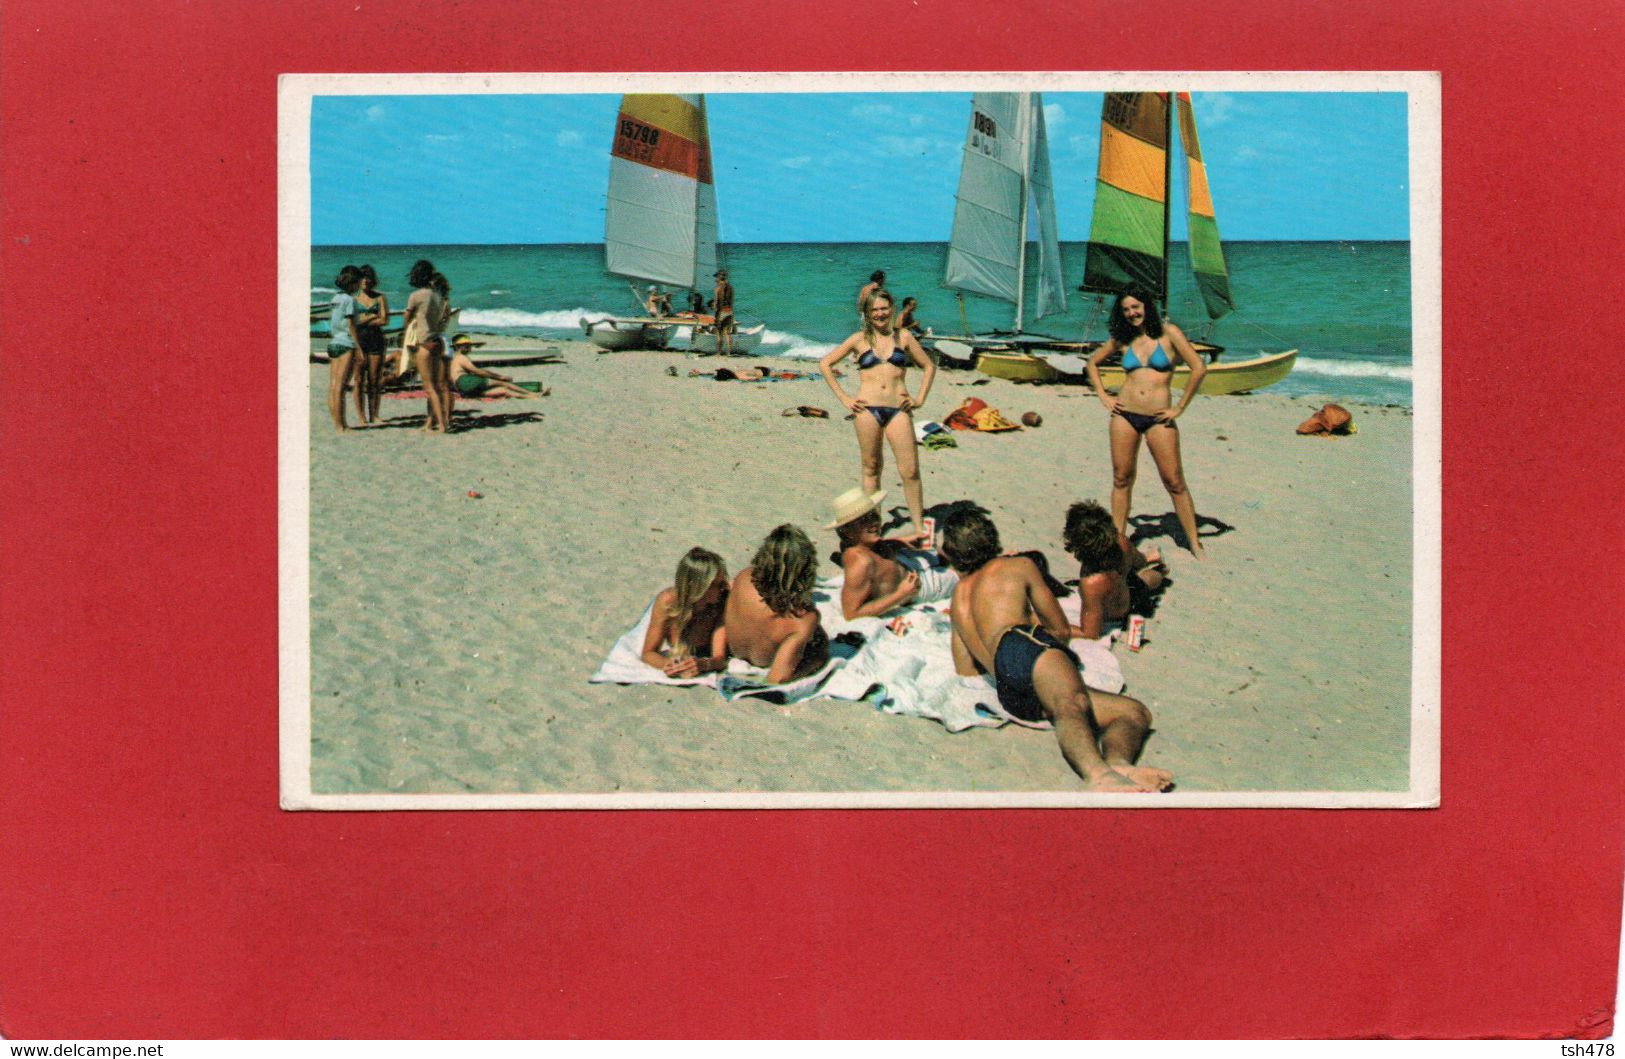 ETATS-UNIS----VIRGINIA BEACH--C'mon Down And Meet The Gang !--voir 2 Scans - Virginia Beach